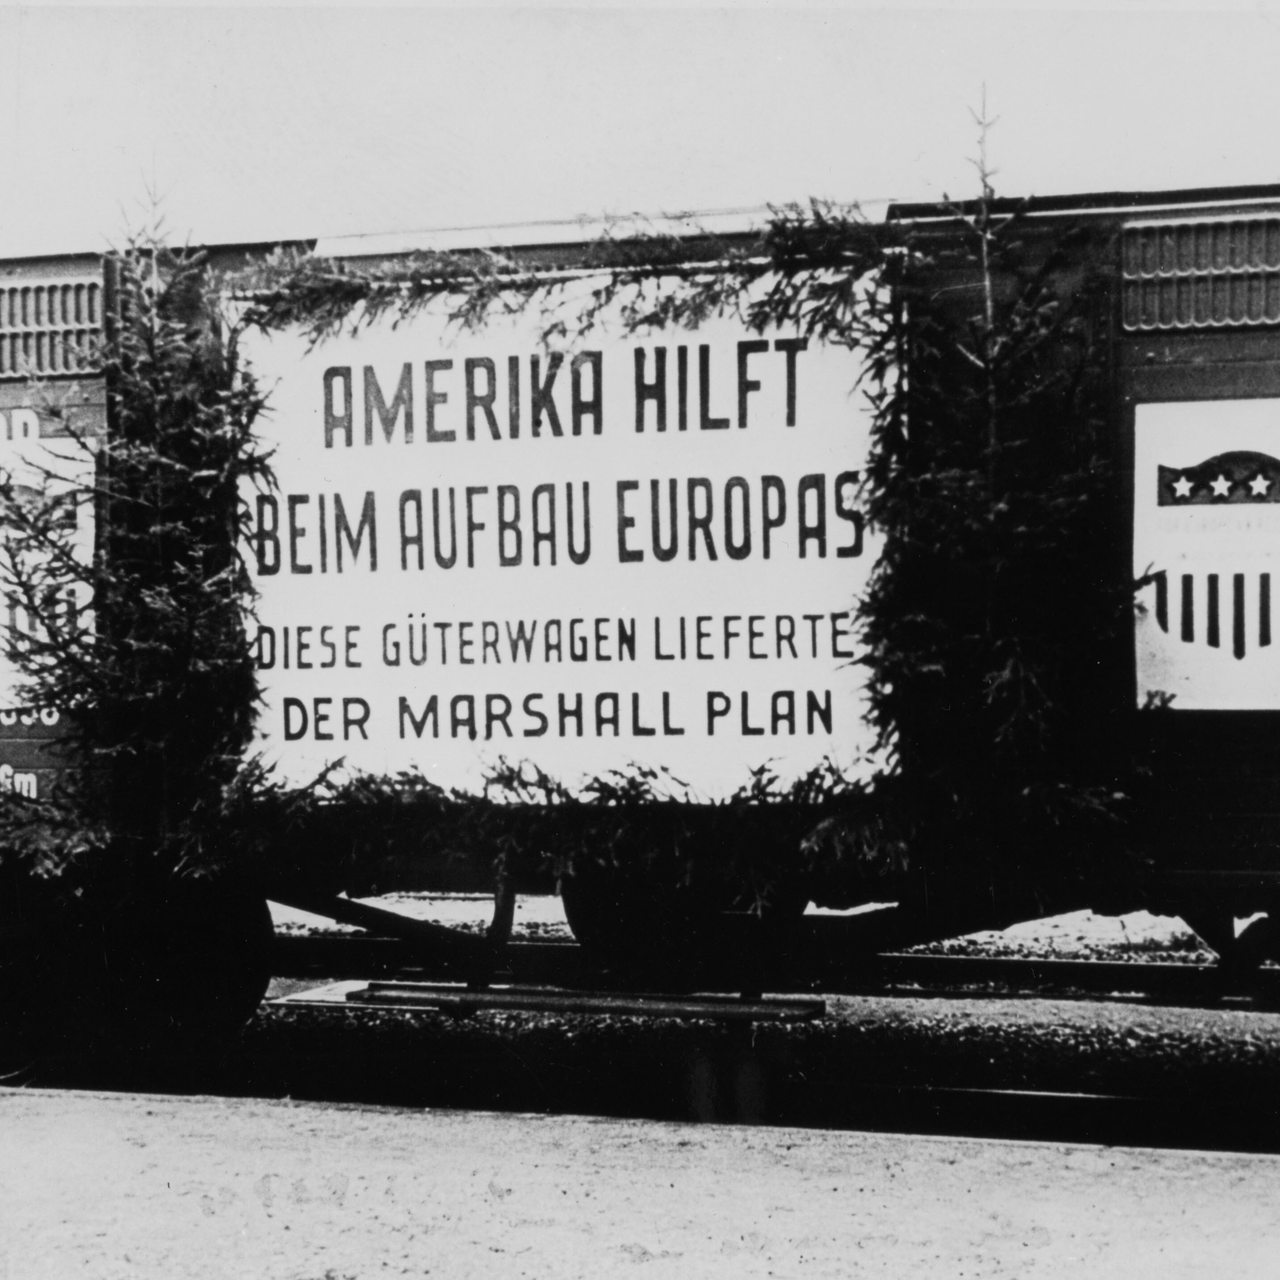 Geschmückter Eisenbahnwaggon während der Übergabe an die Deutsche Reichsbahn (Archivbild)